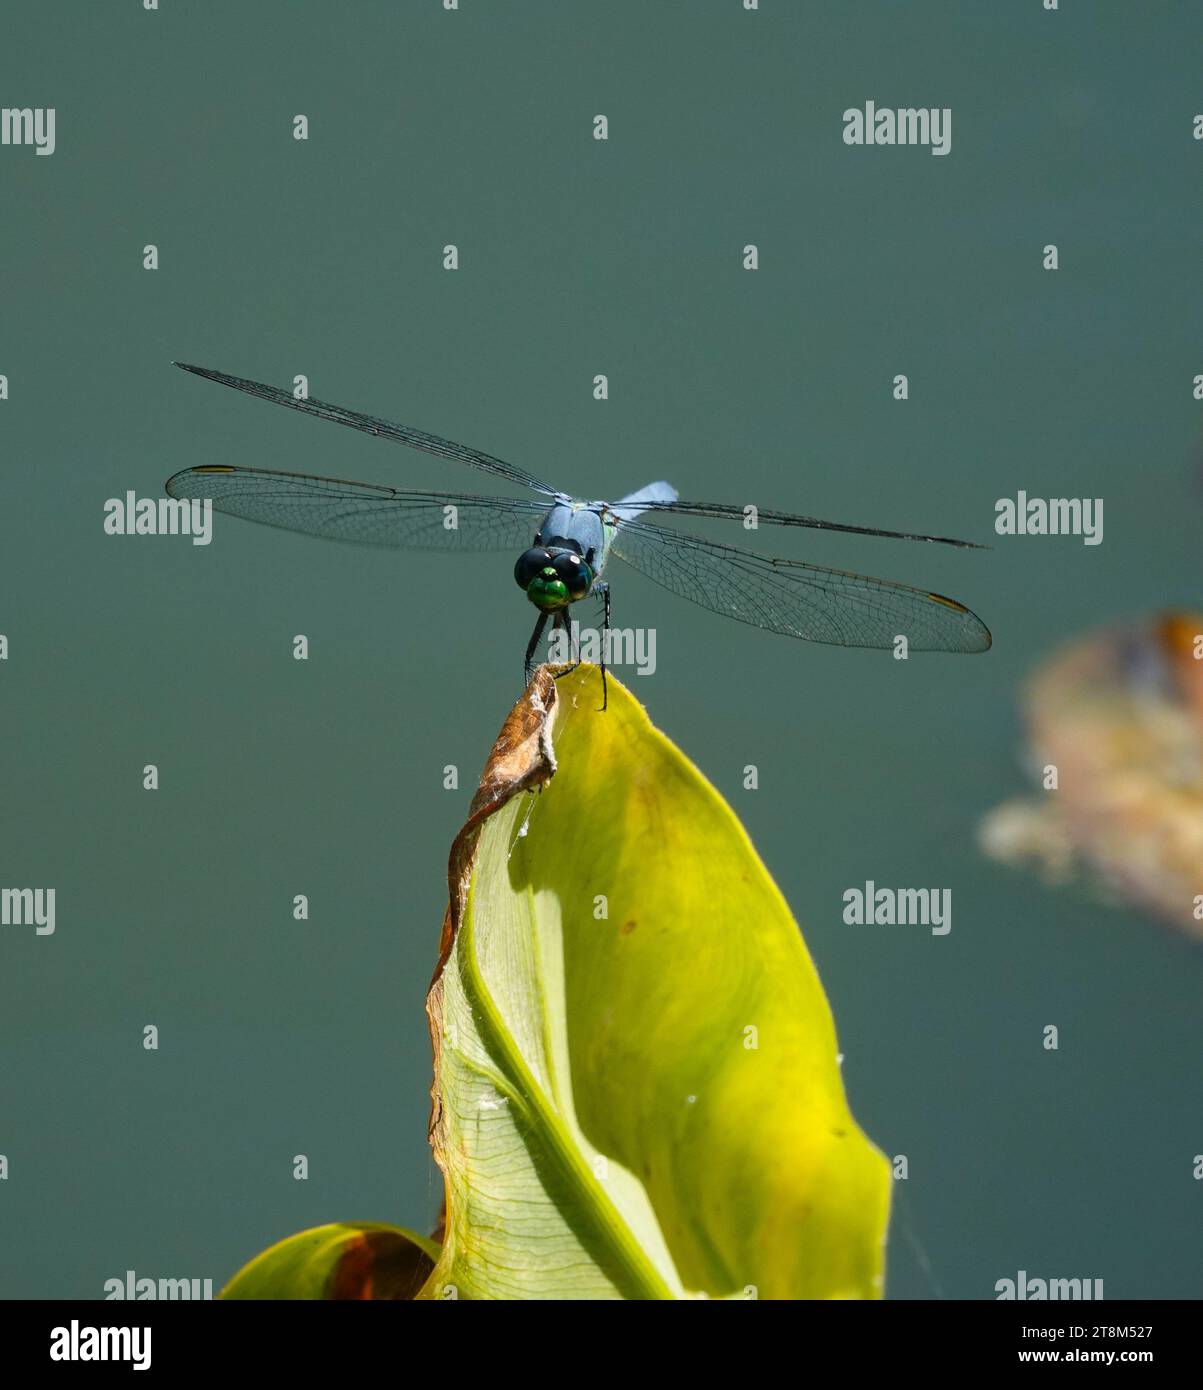 Une libellule bleue perchée sur une feuille vert clair sur un fond gris flou Banque D'Images